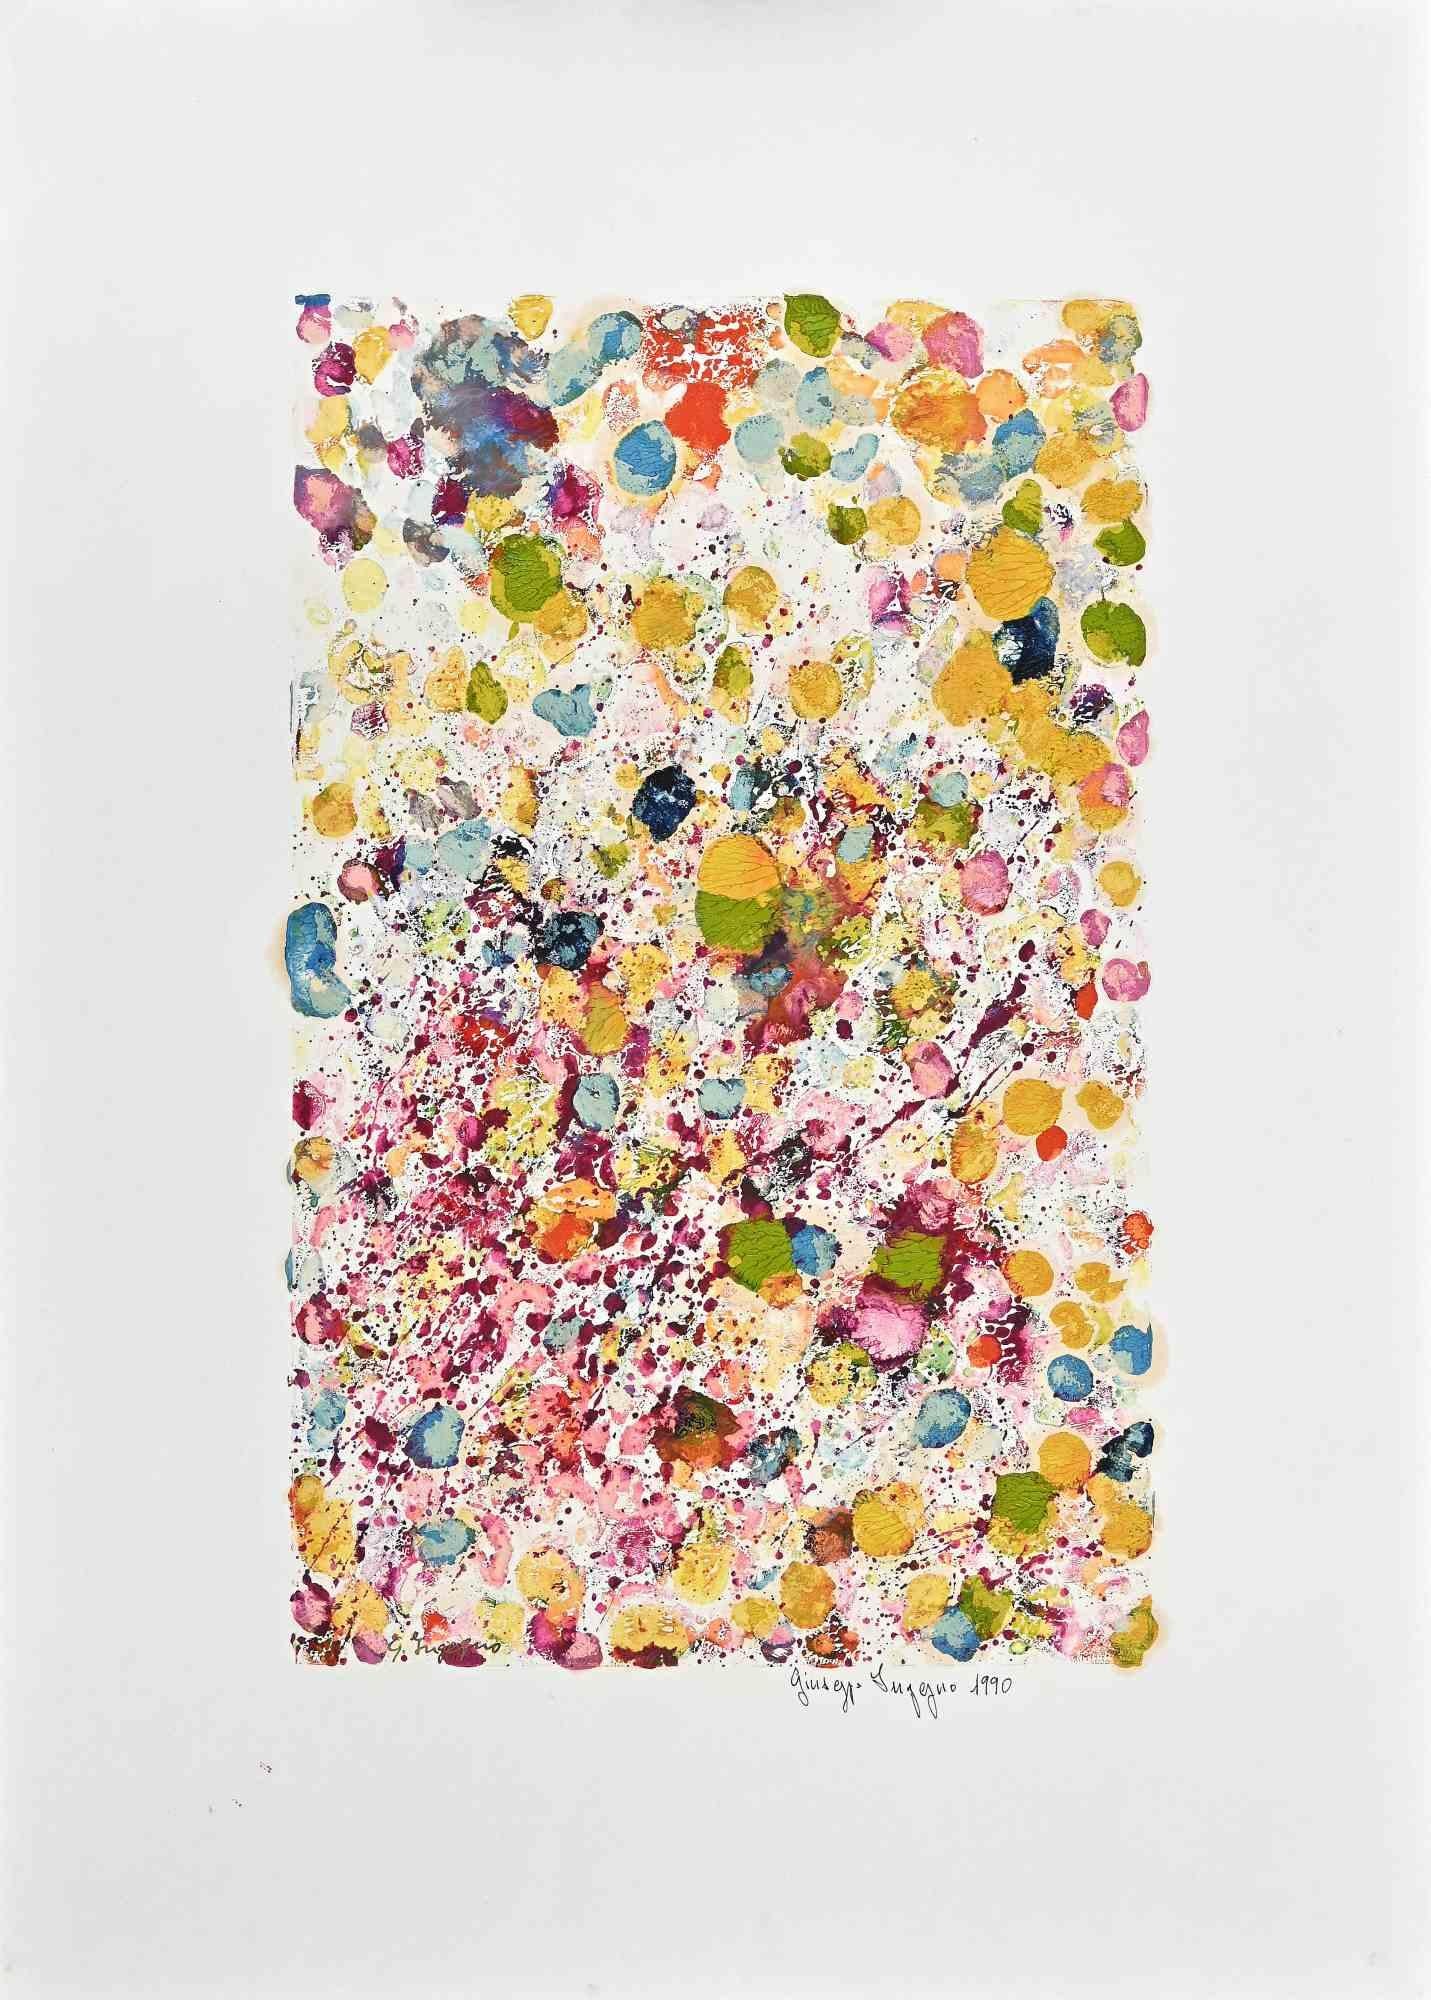 Die Blumenkomposition ist eine  Ölgemälde von Giuseppe Ingegno aus dem Jahr 1990.

Handsigniert und datiert auf der Unterseite. Mit dem Label auf der Rückseite "Fondazione di Paolo".

Gute Bedingungen.

Dieses schöne farbige Ölgemälde stellt eine